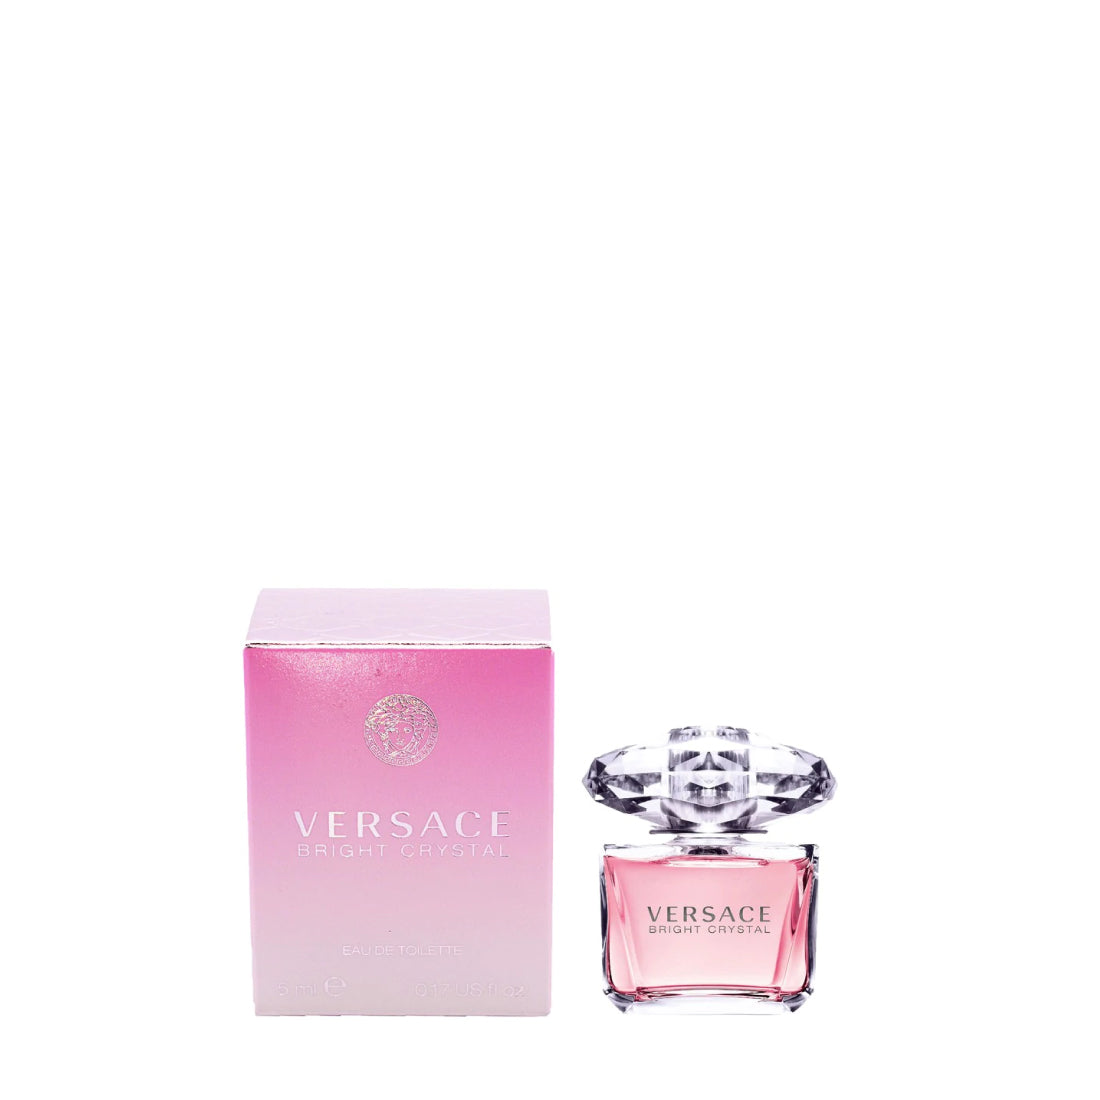 Versace Bright Women – | Toilette Now Crystal for Plus Eau Perfume De Outlet Buy